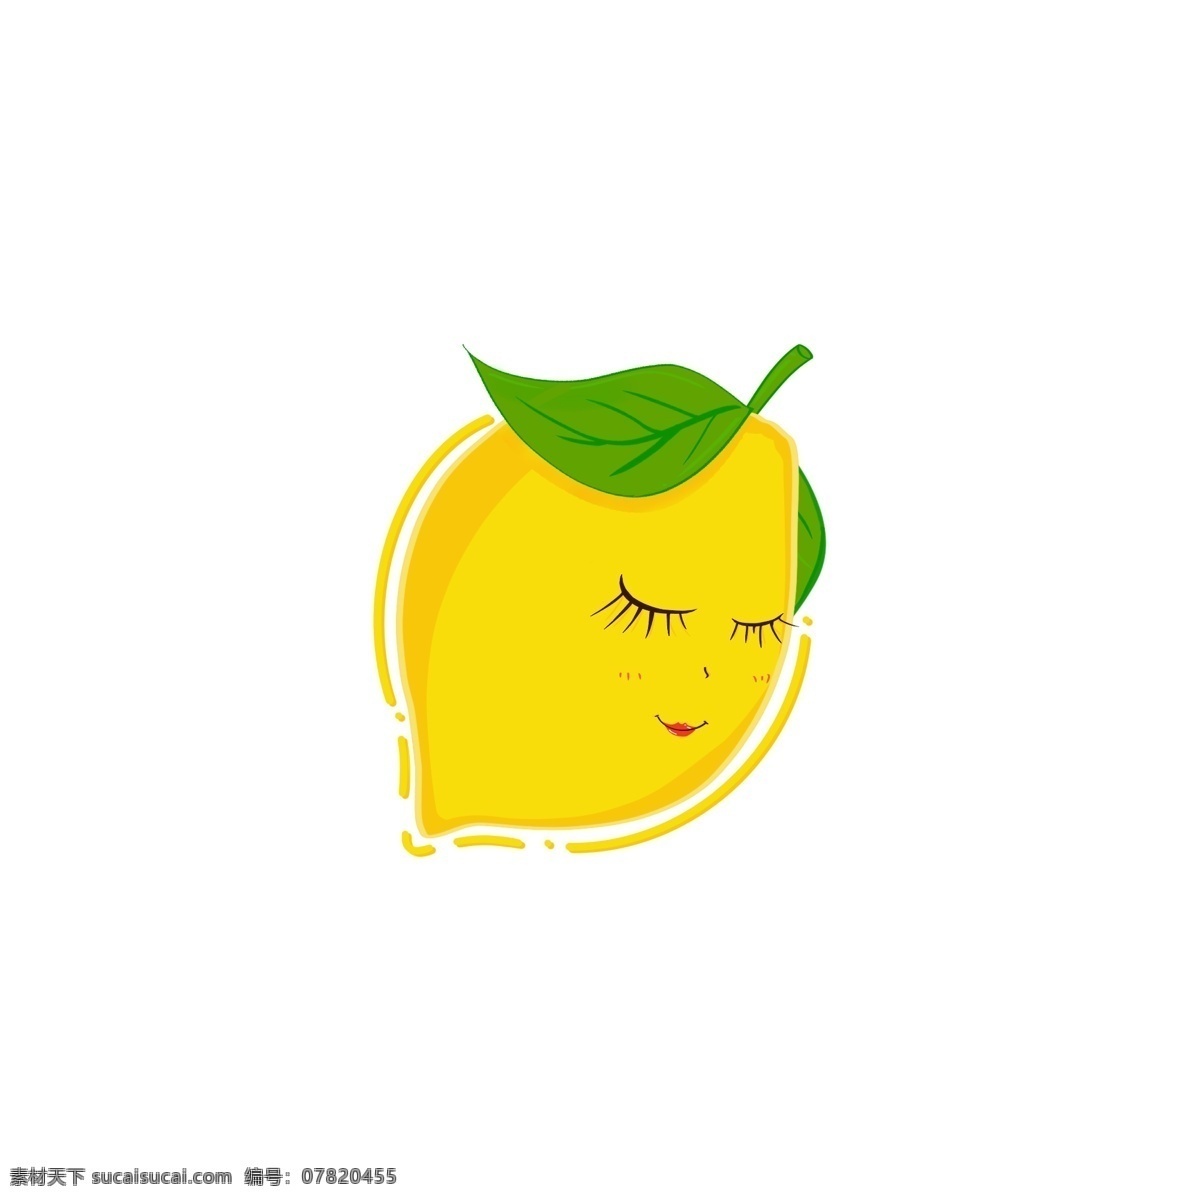 水果 柠檬 害羞 笑脸 黄色 卡通